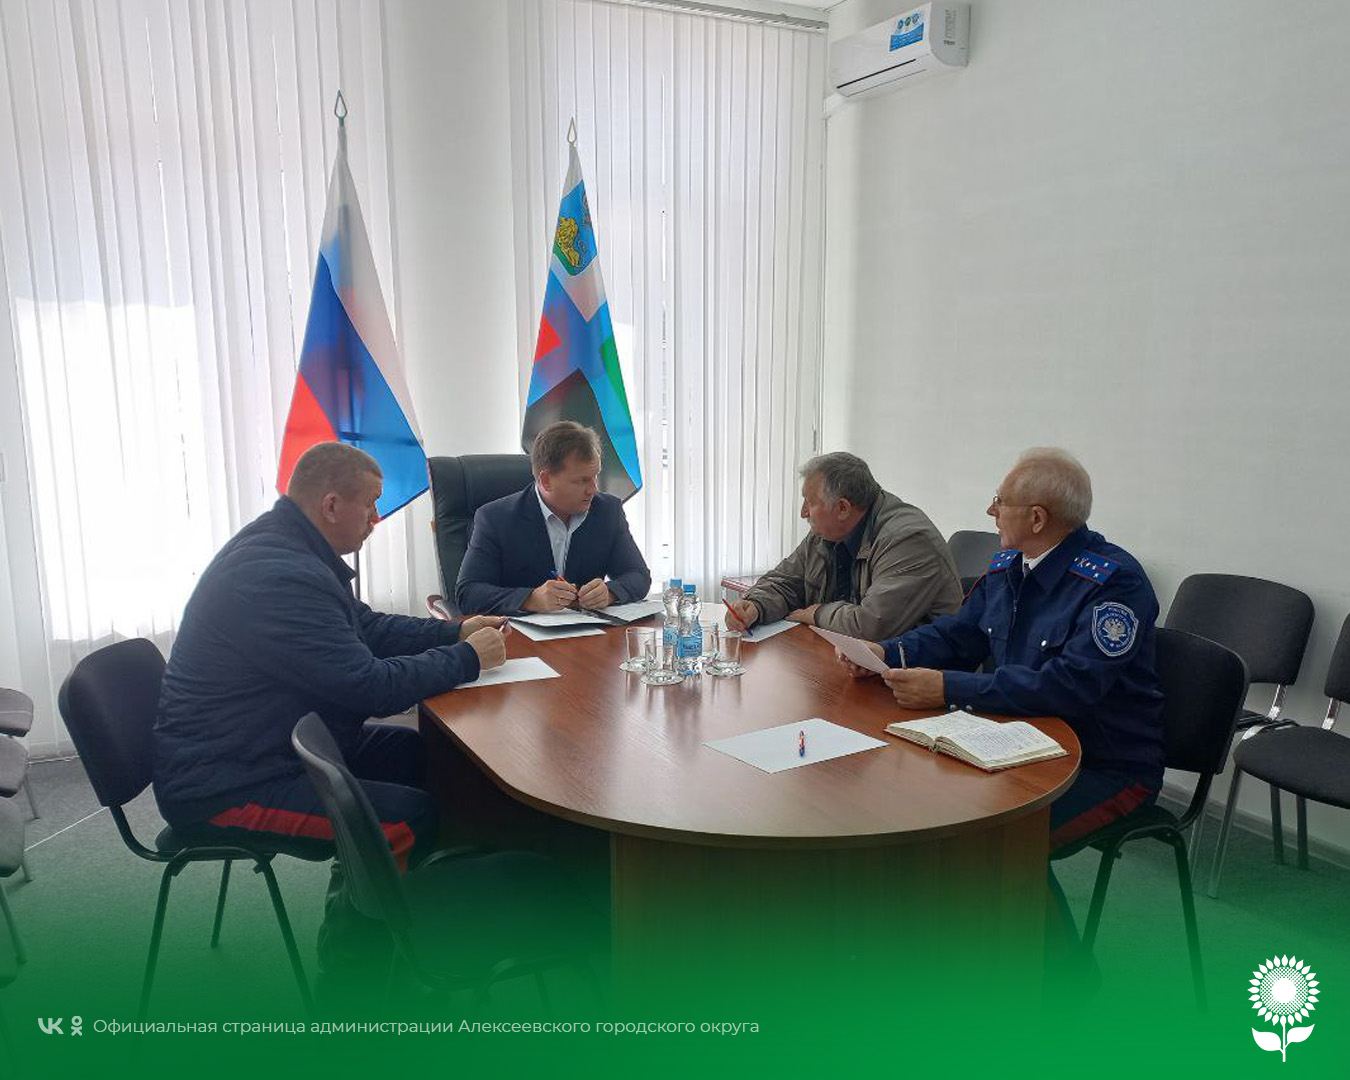 Сегодня в общественной приёмной Губернатора Белгородской области в Алексеевском городском округе состоялась рабочая встреча